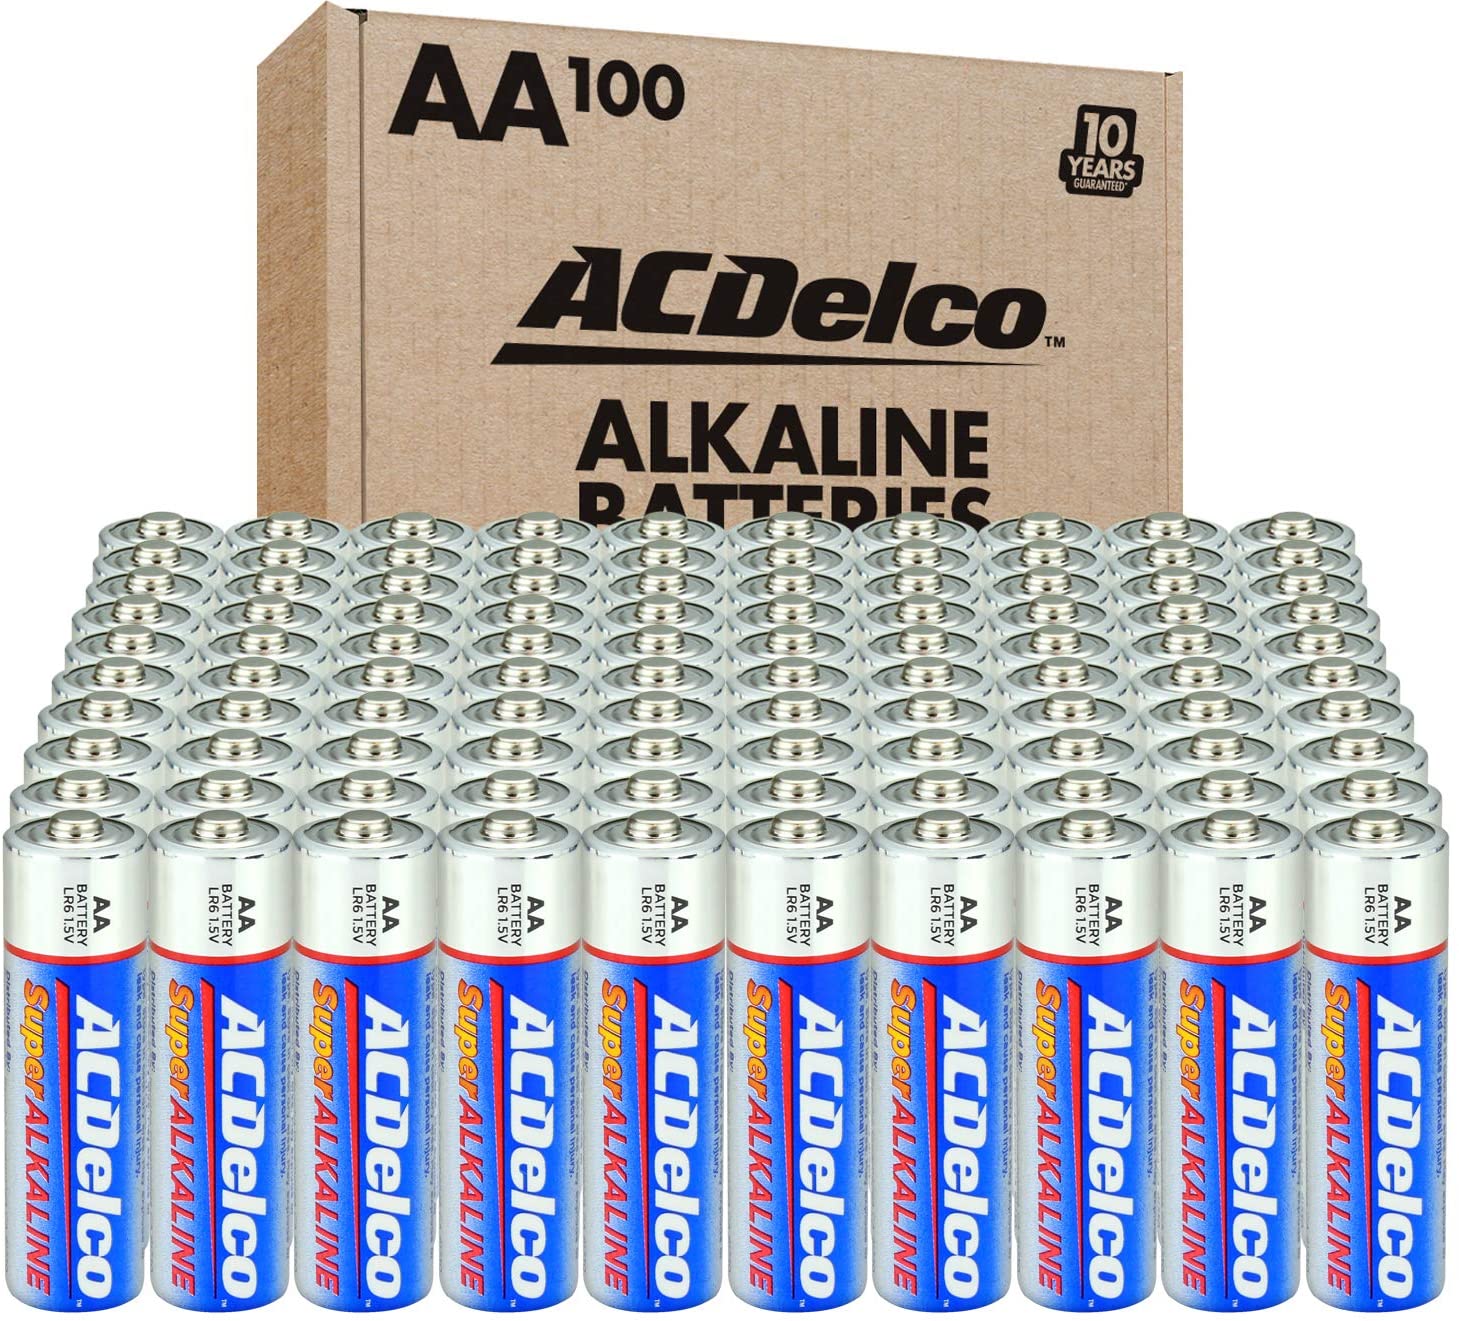 ACDelco Maximum Power Super Alkaline AA Batteries, 100-Count